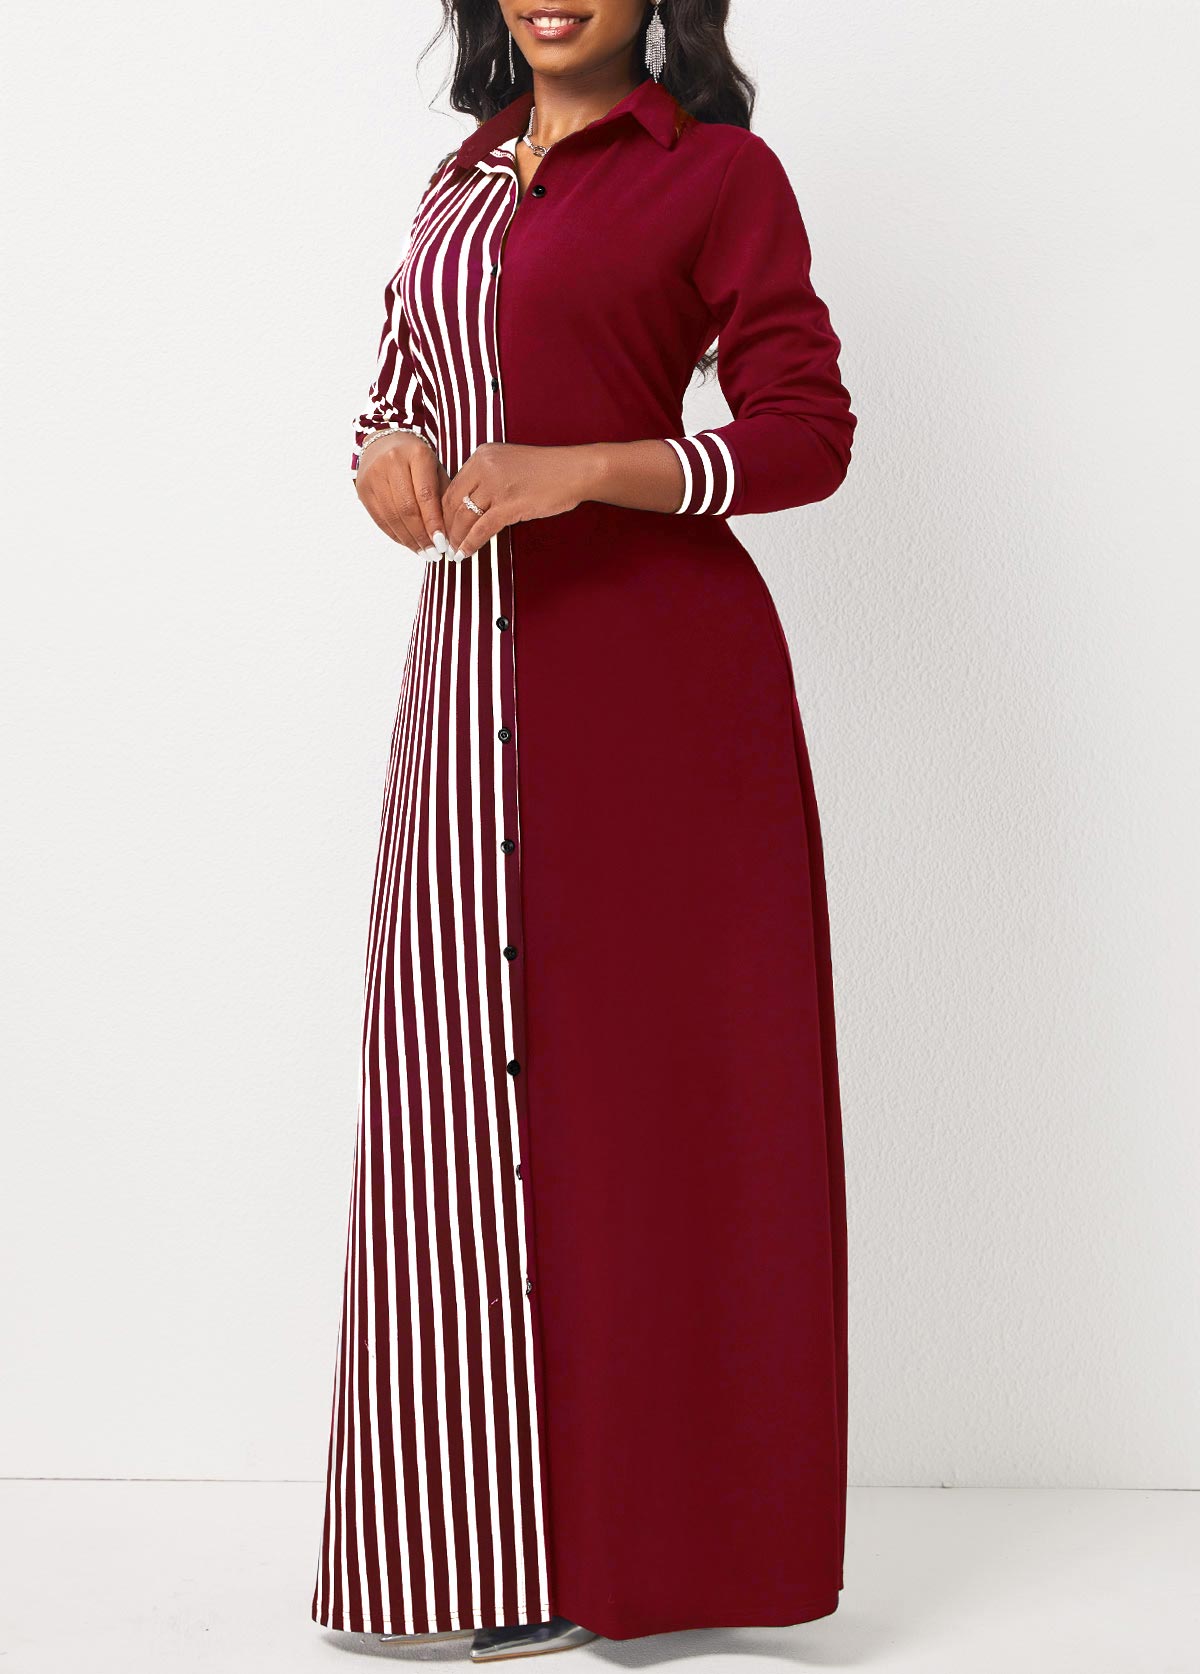 Pocket Wine Red Striped Maxi Dress